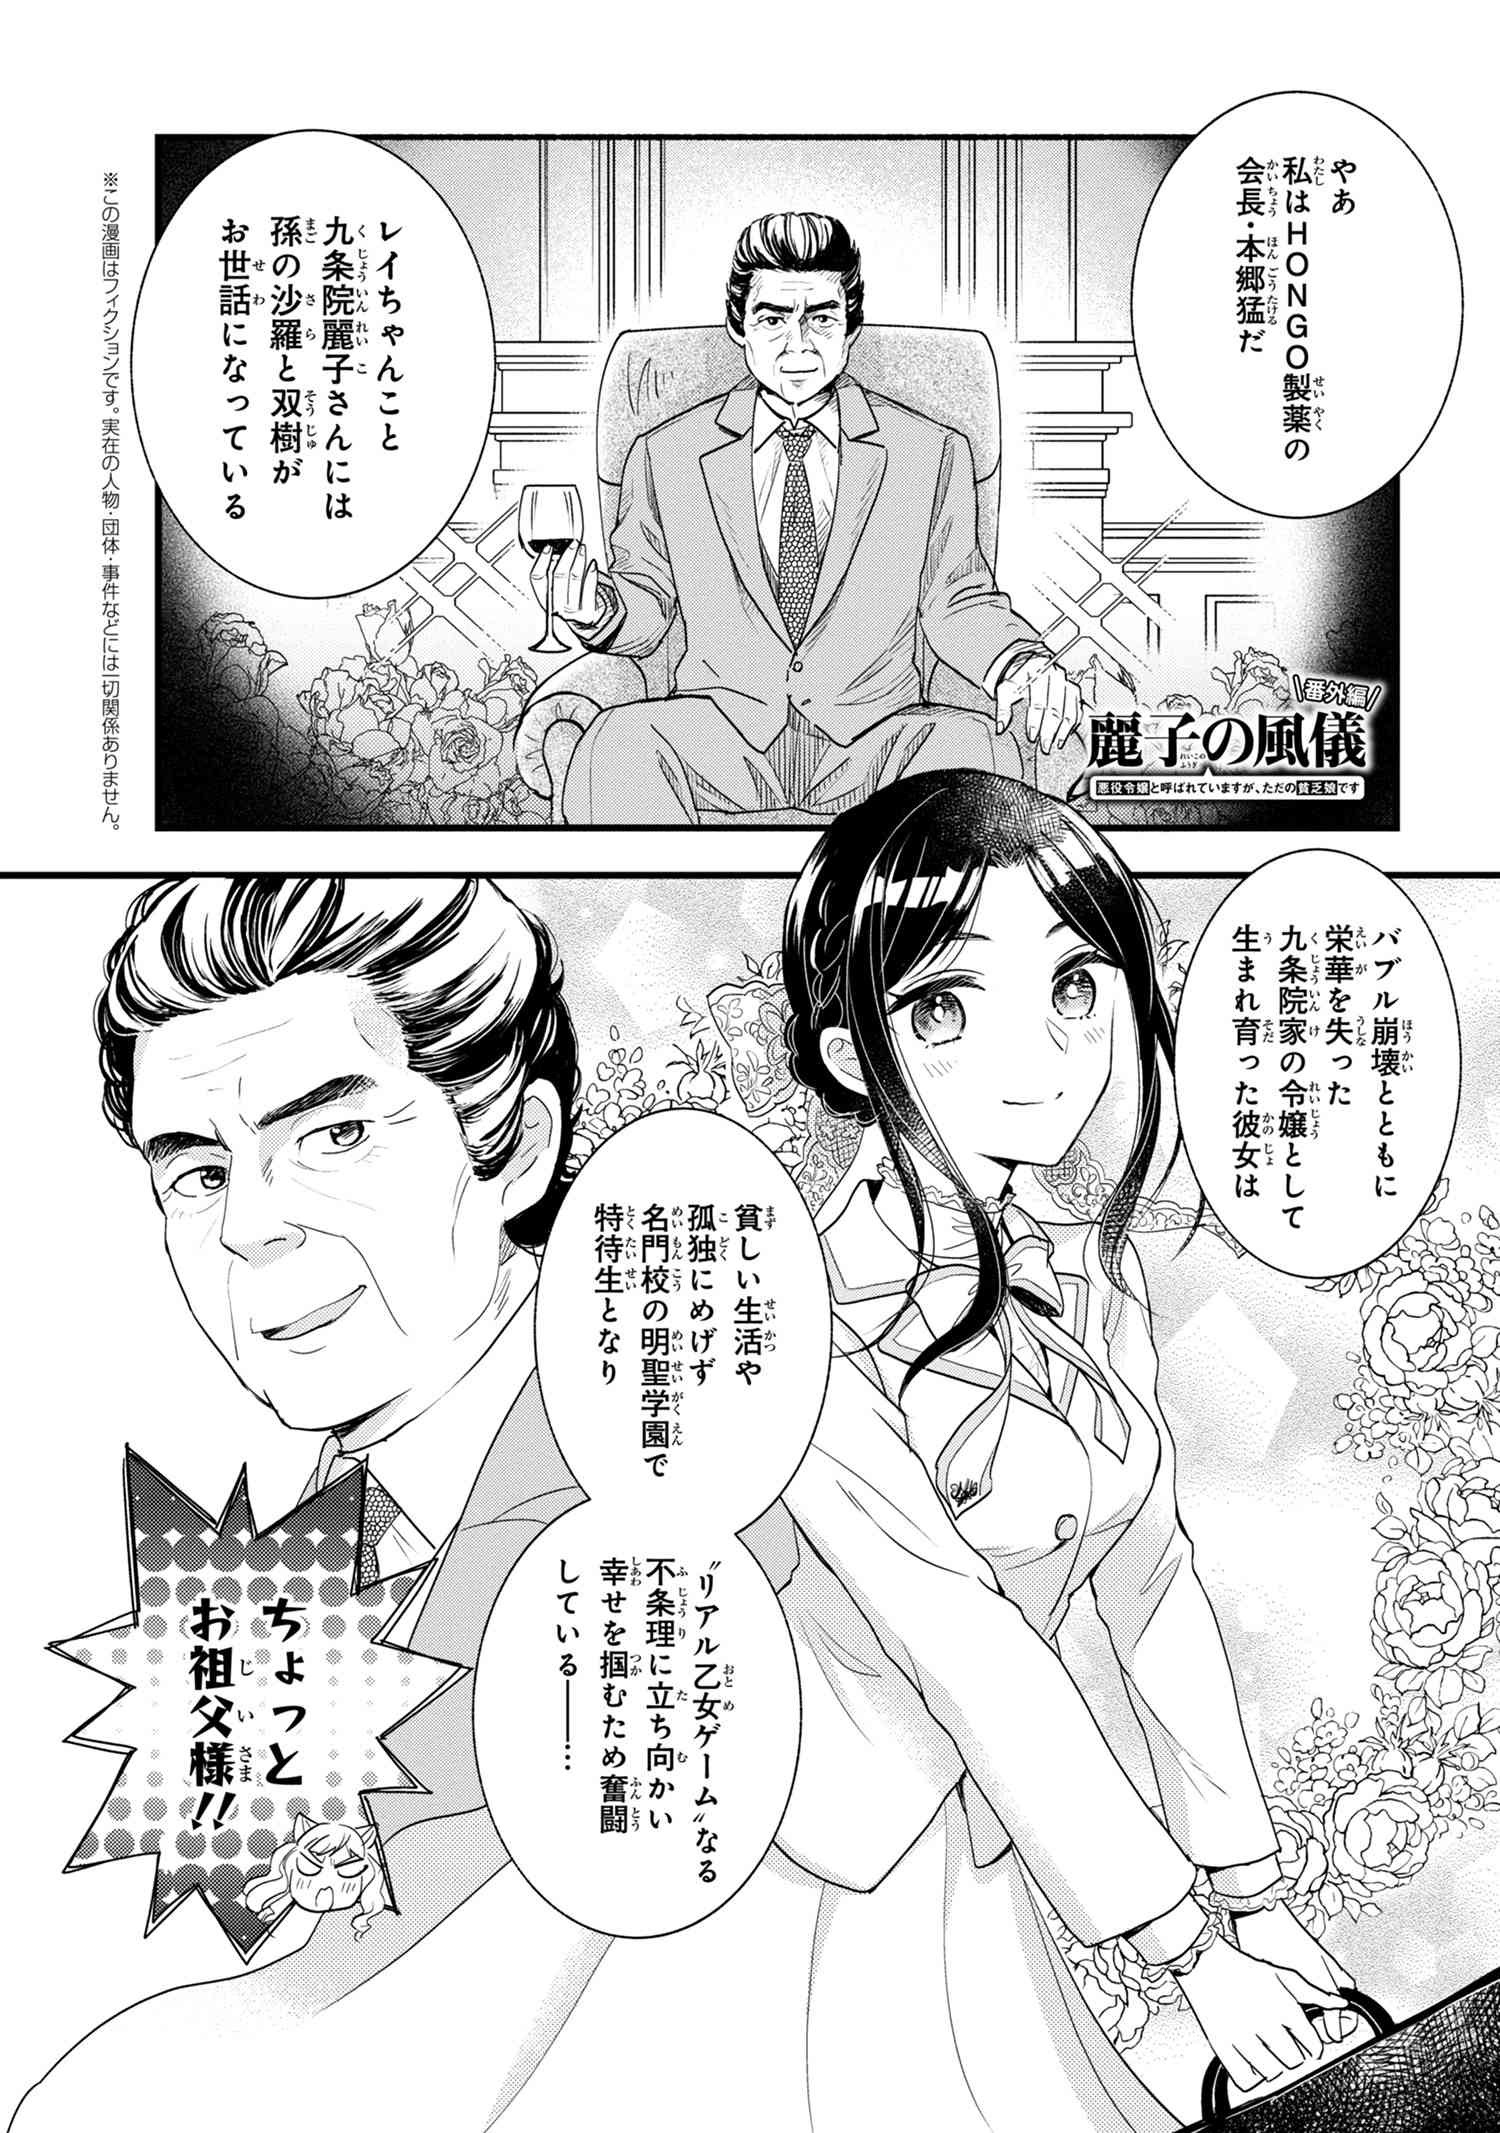 Reiko no Fuugi Akuyaku Reijou to Yobarete imasu ga, tada no Binbou Musume desu - Chapter 6.5 - Page 1